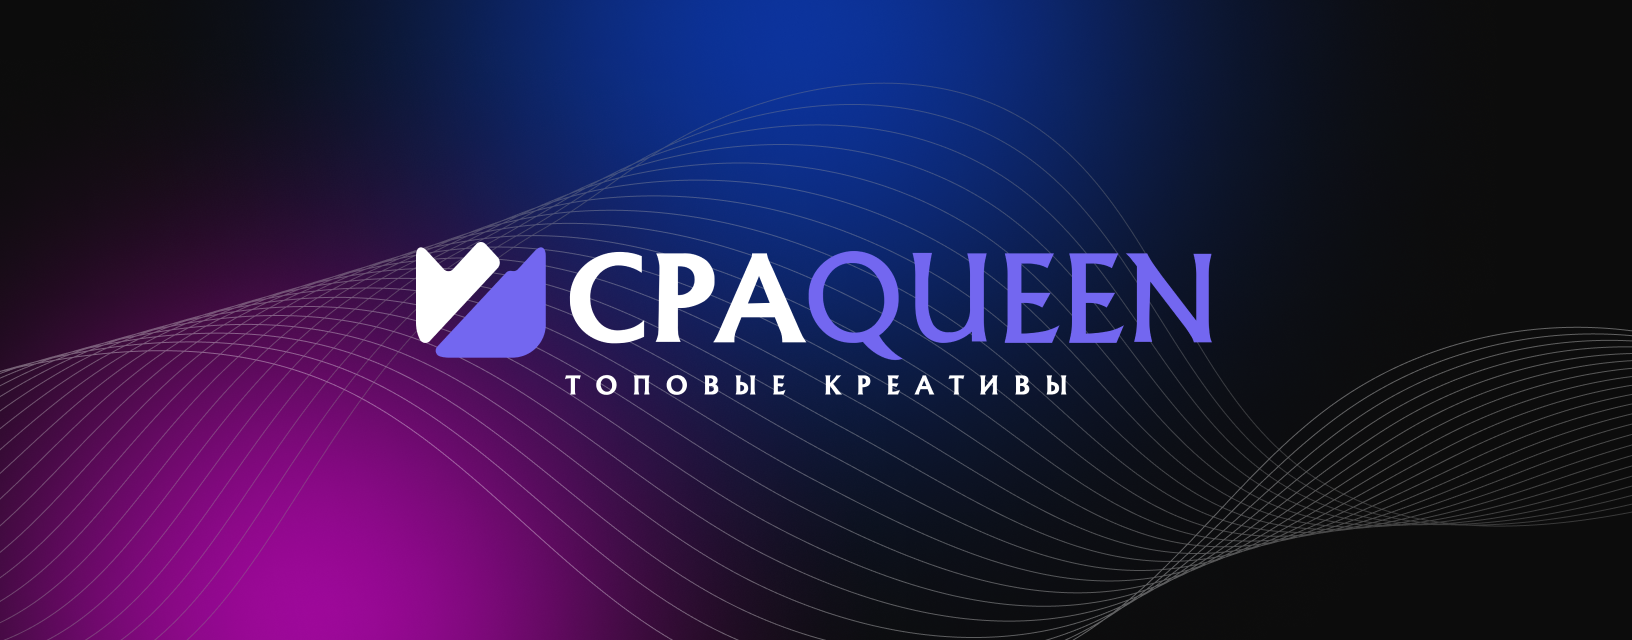 CPA Queen_desktop